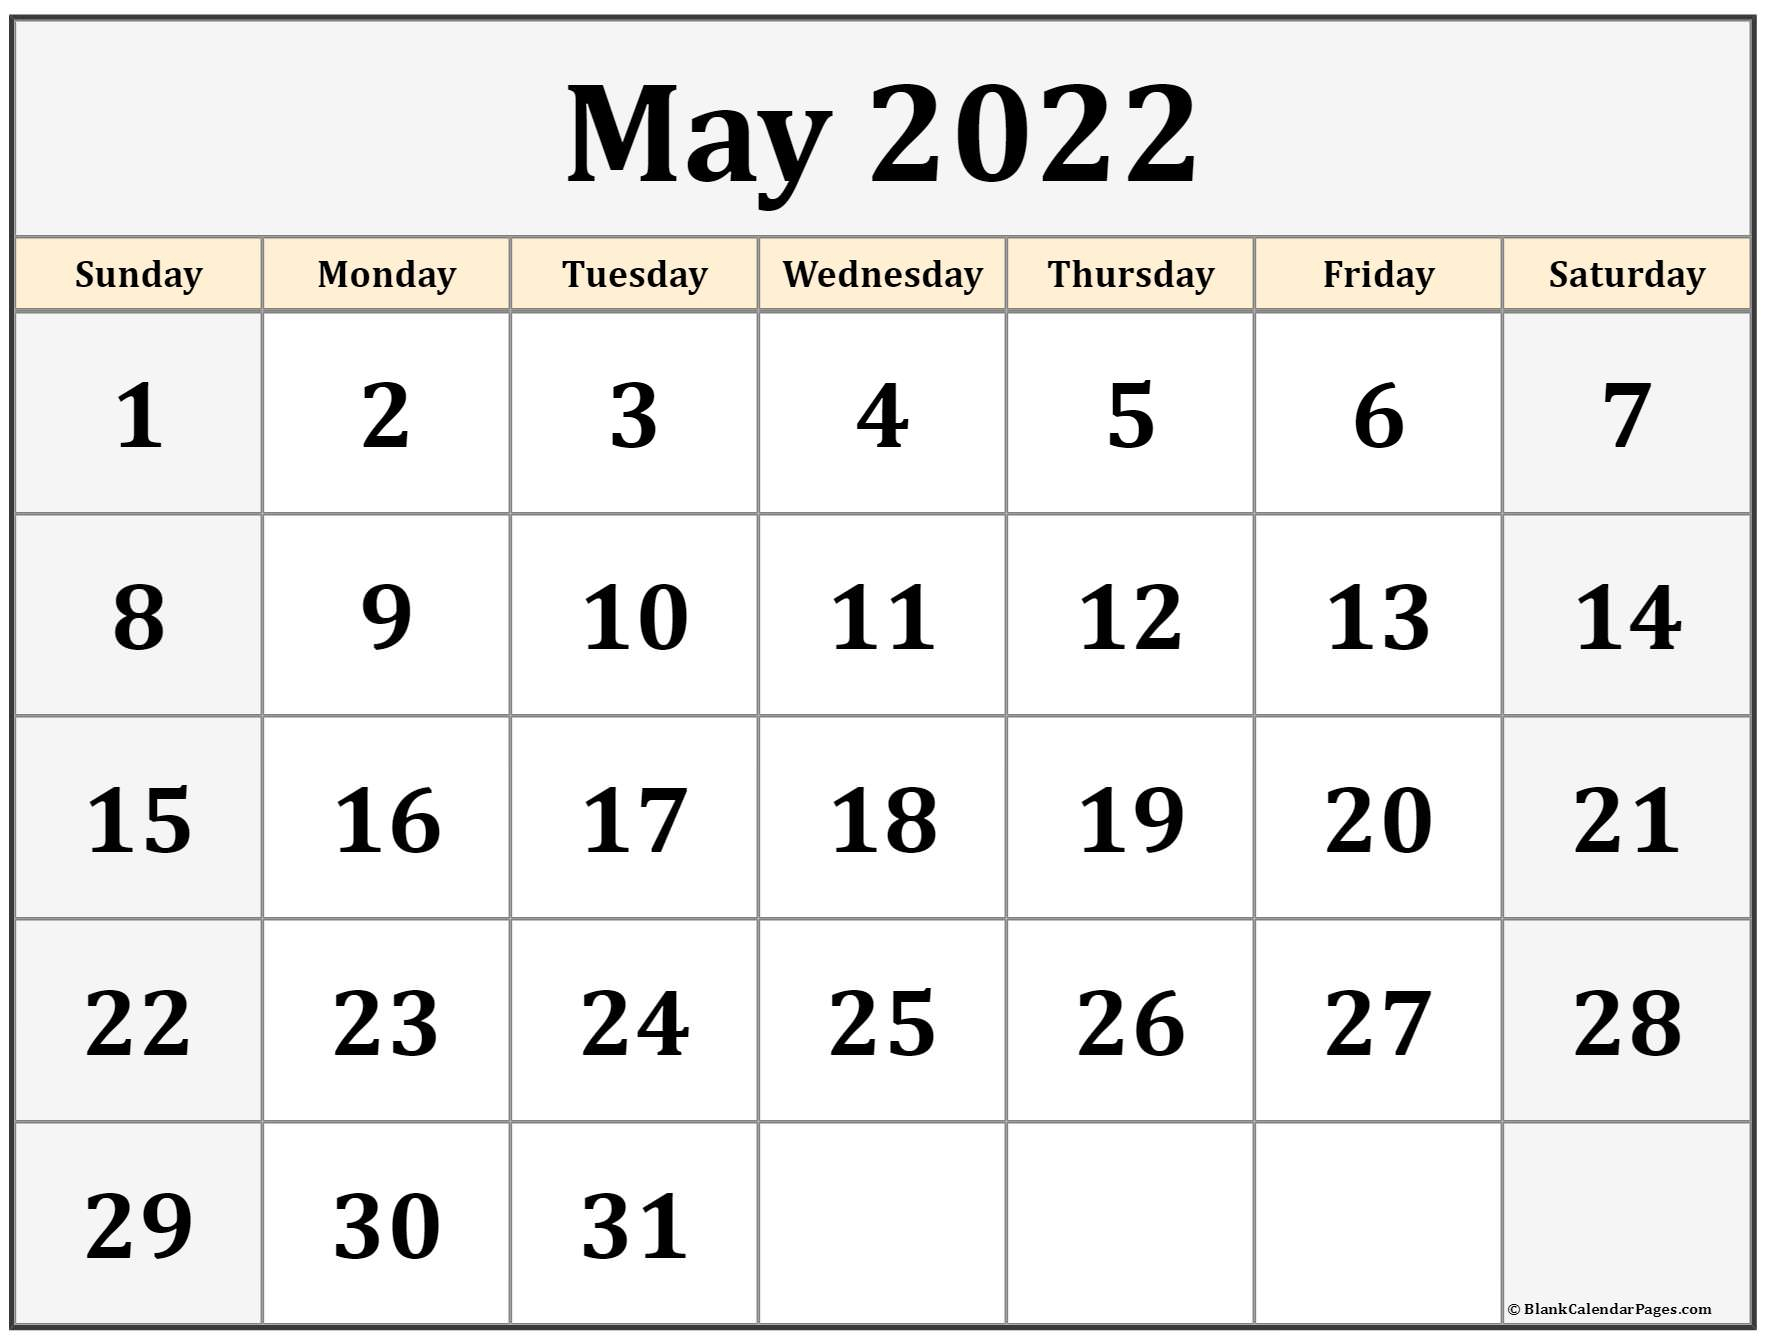 Pick Tamil Calendar 2022 May Month